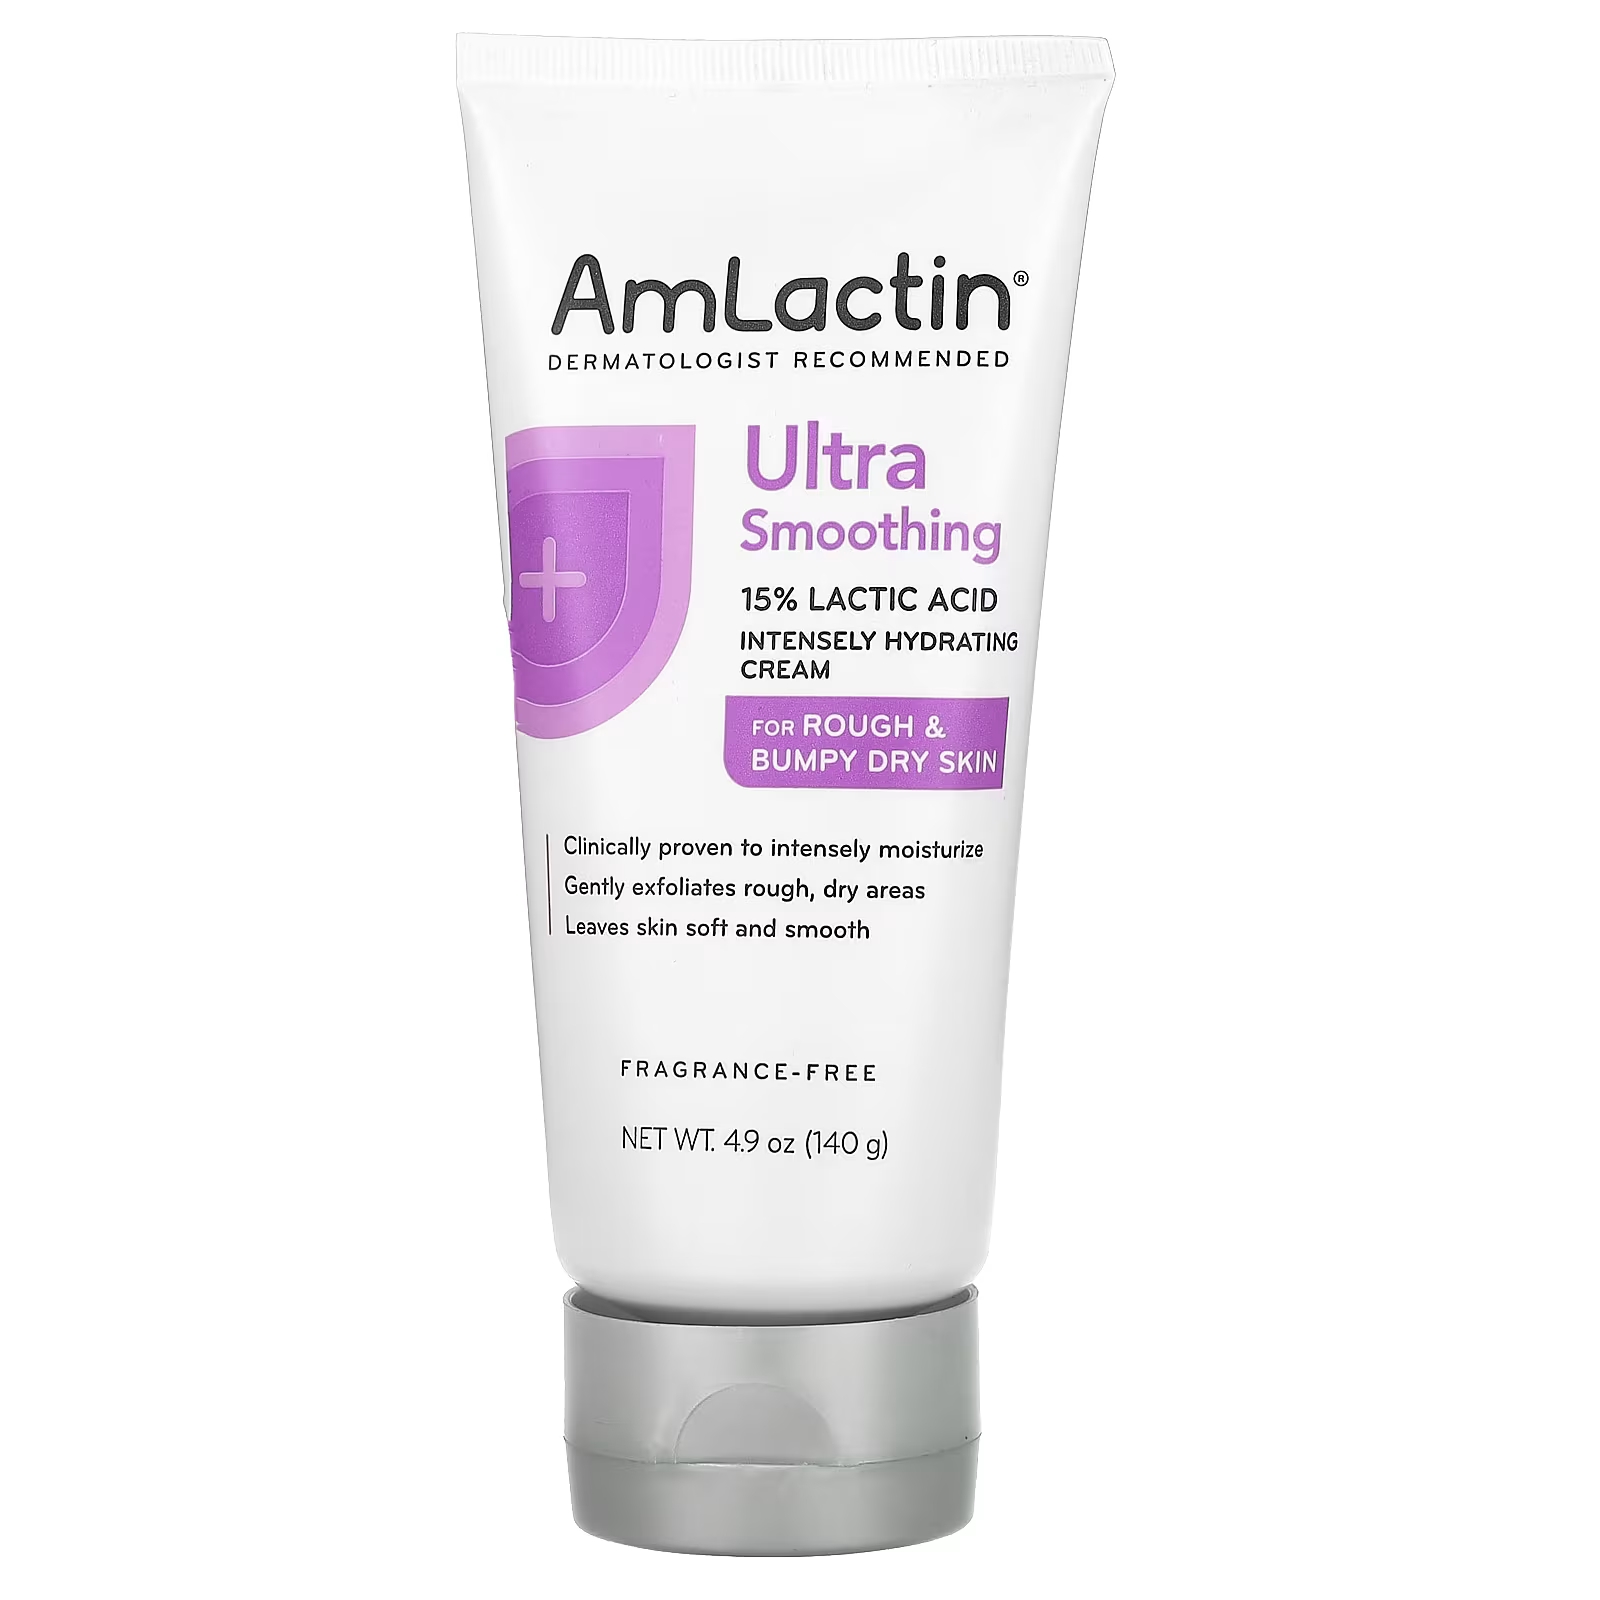 Крем AmLactin Ultra для грубой и неровной сухой кожи, 140 г amlactin ultra smoothing разглаживающий крем для огрубевшей и сухой кожи 140 г 4 9 унции